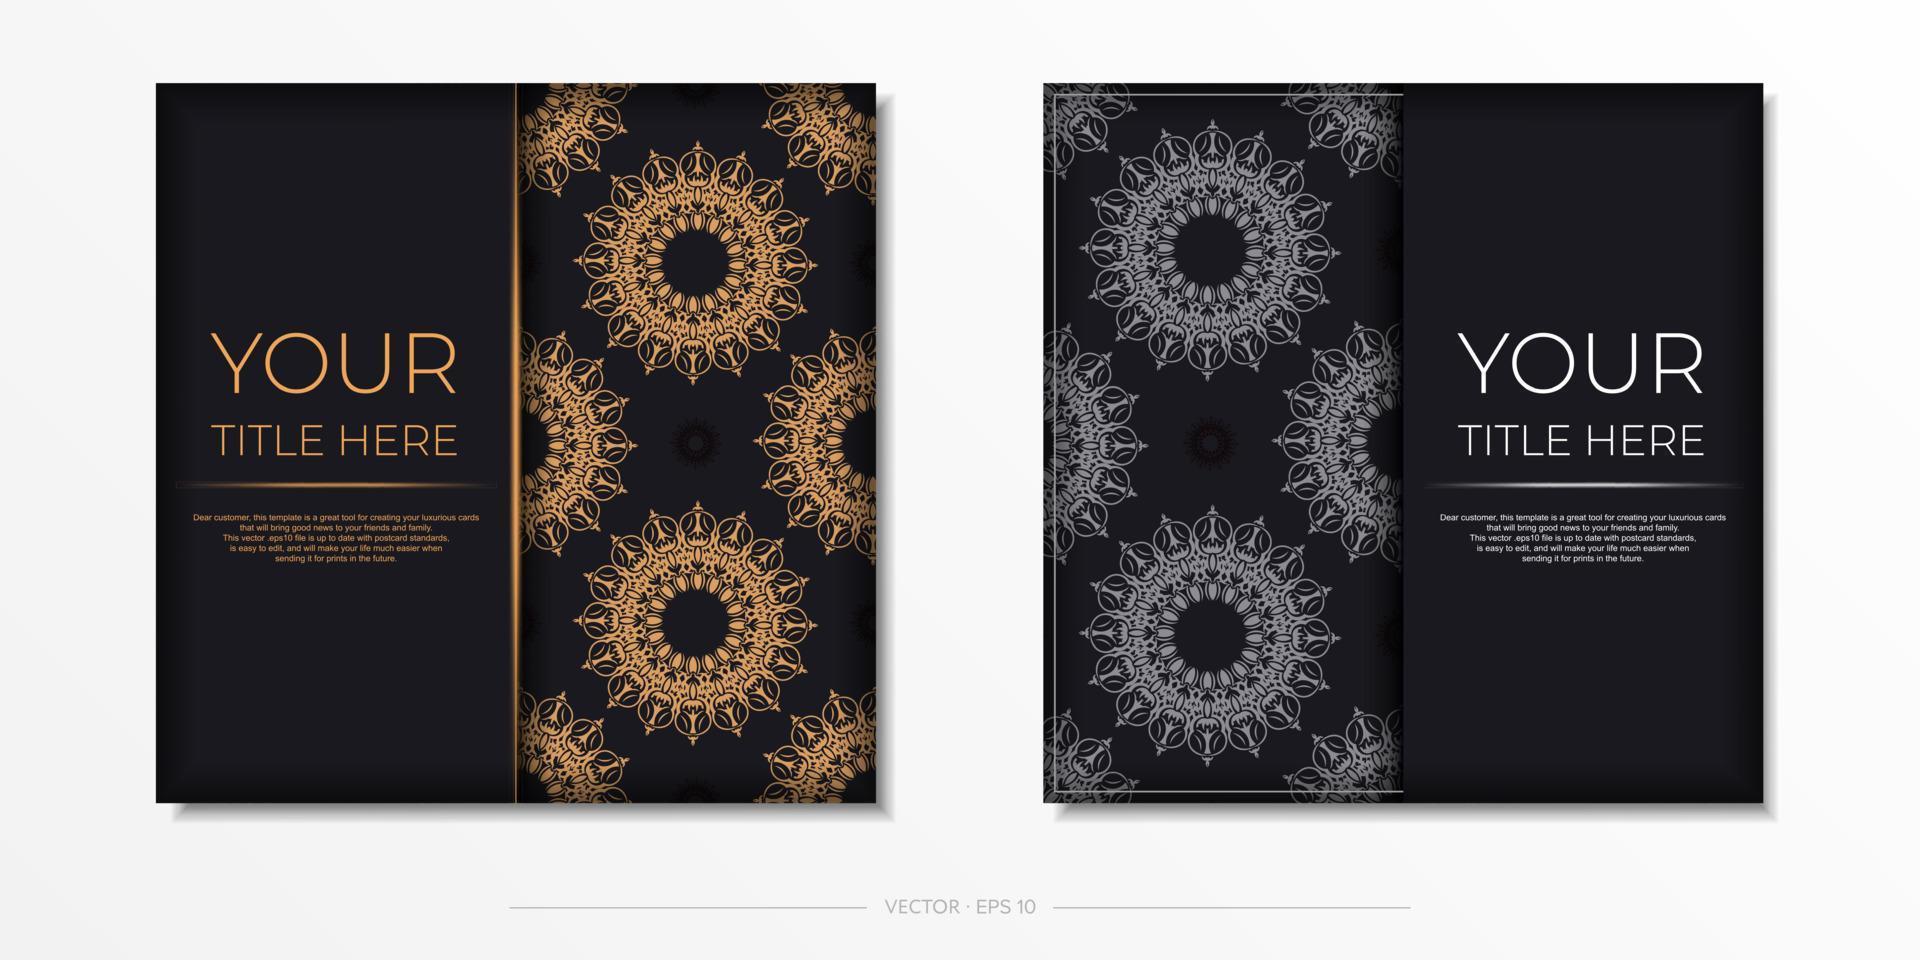 modelo de vetor quadrado cartão postal cor preta com ornamentos luxuosos. design de convite pronto para impressão com ornamentos vintage.